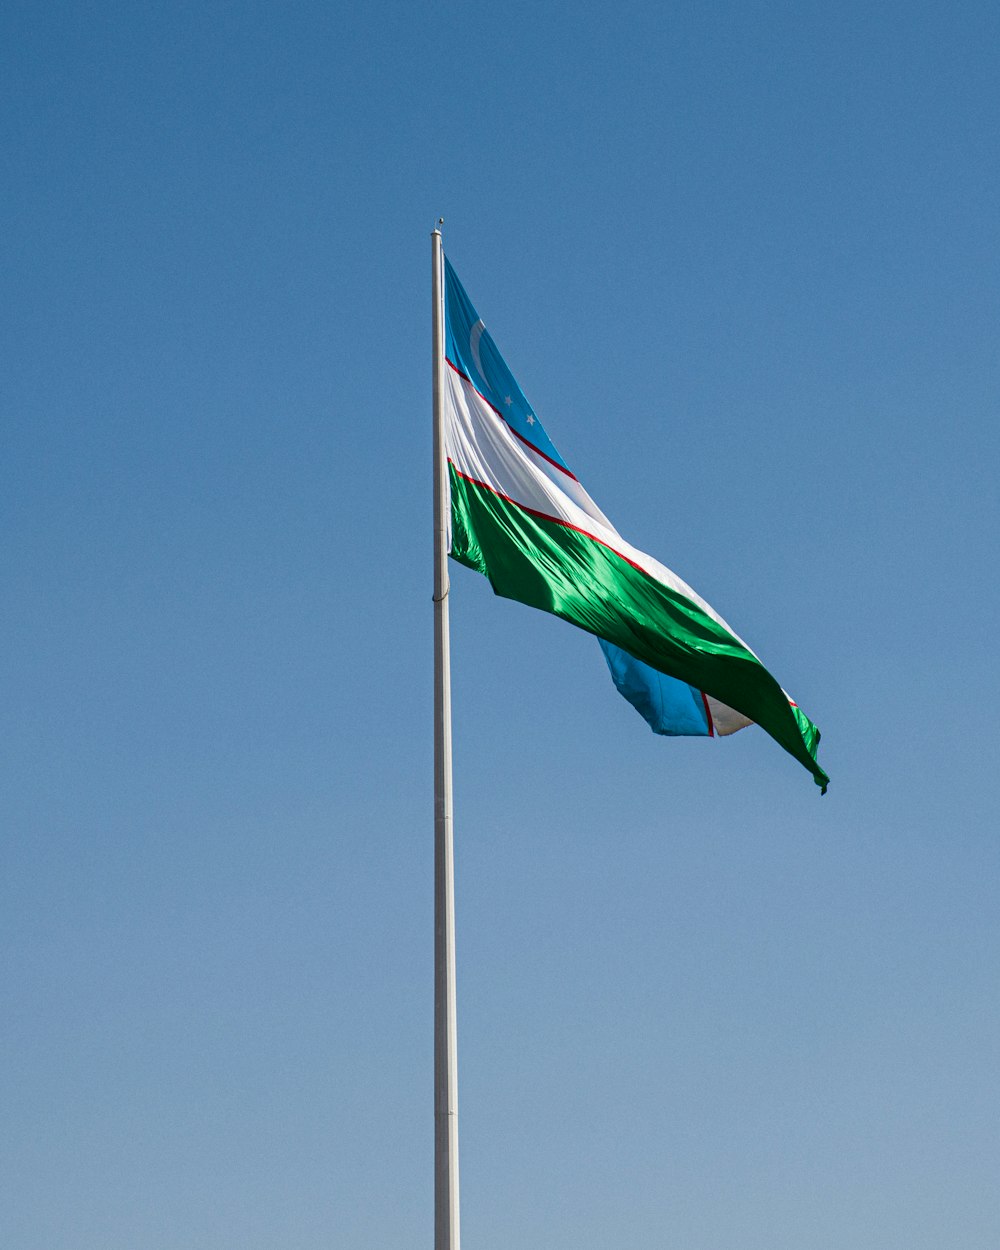 Bandera verde y blanca bajo el cielo azul durante el día